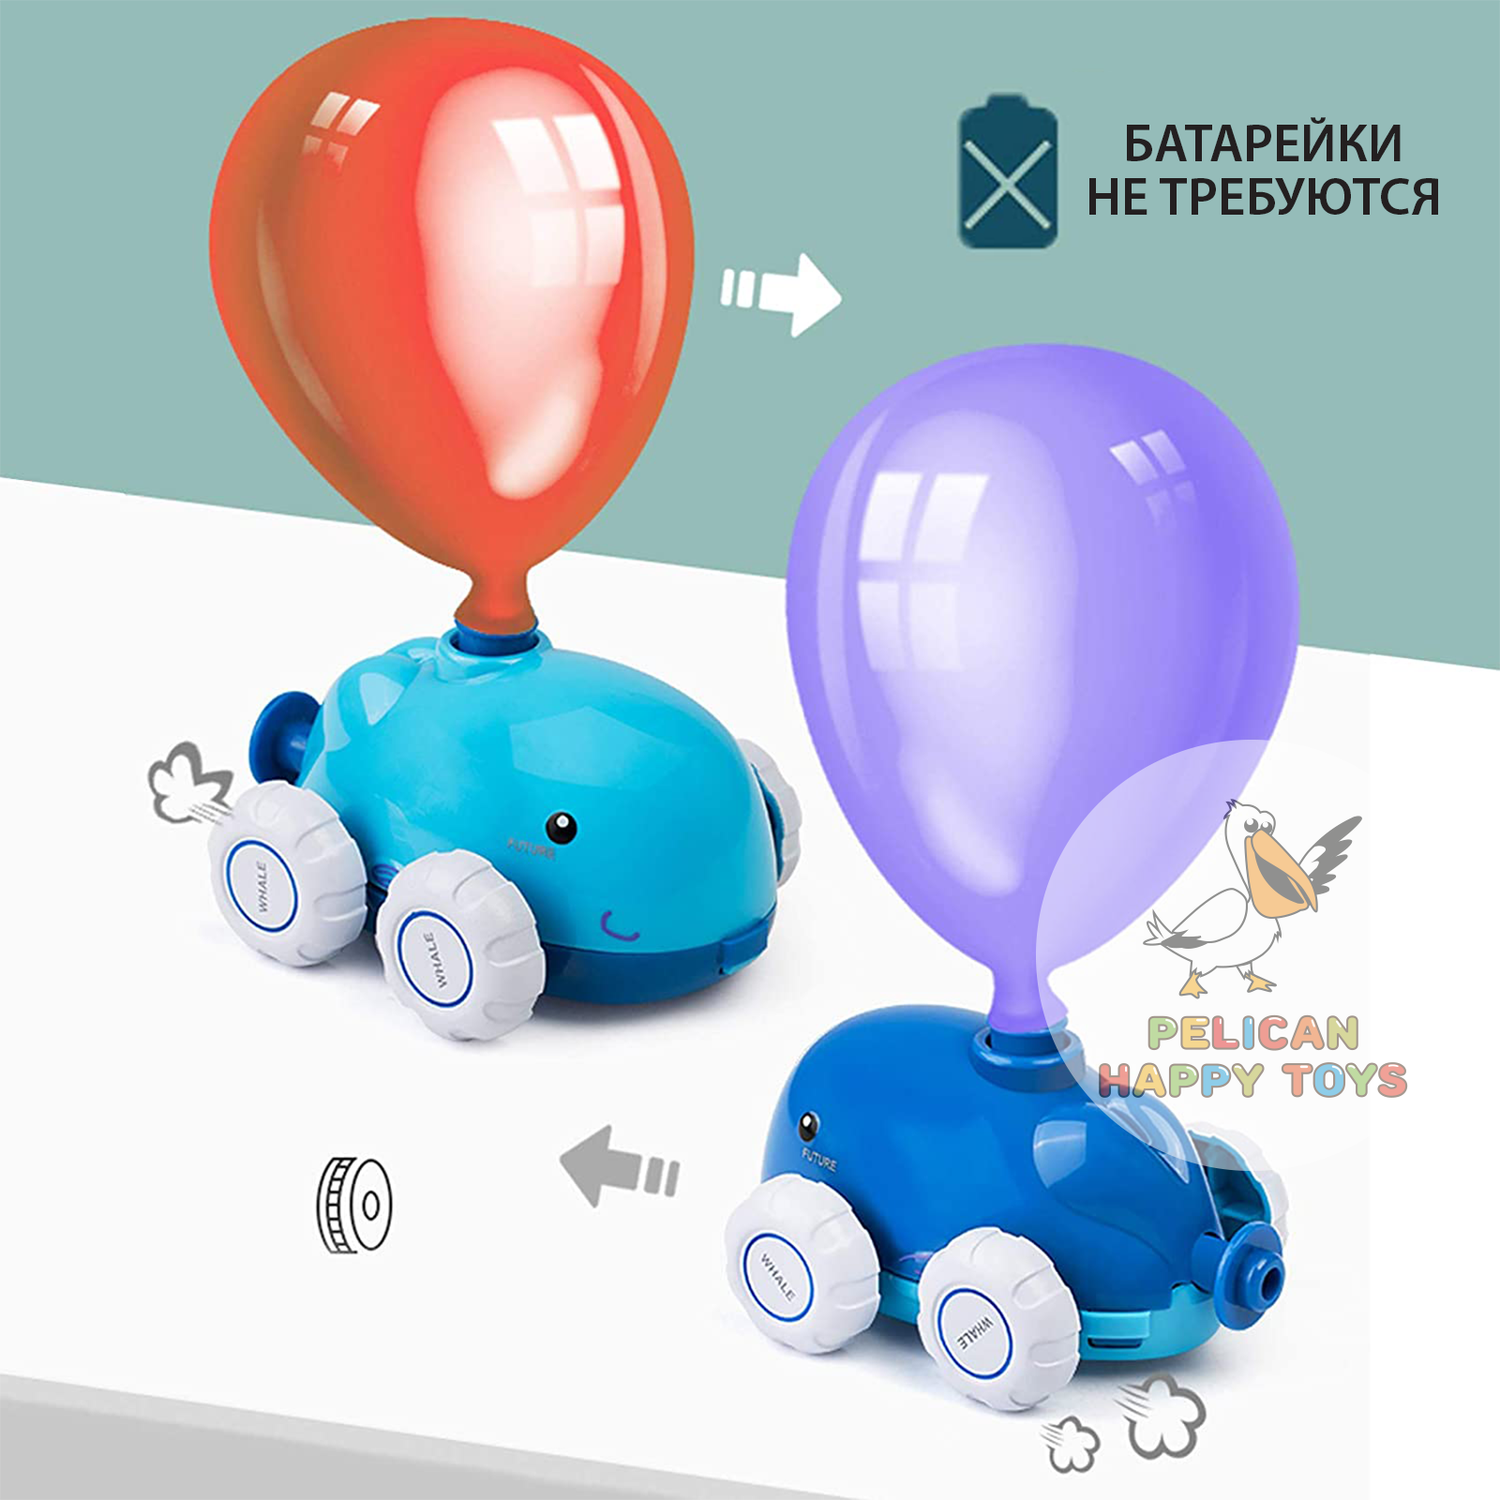 Машинки реактивные гоночные PELICAN HAPPY TOYS транспорт машинки с воздушными шариками Детский игровой набор - фото 9